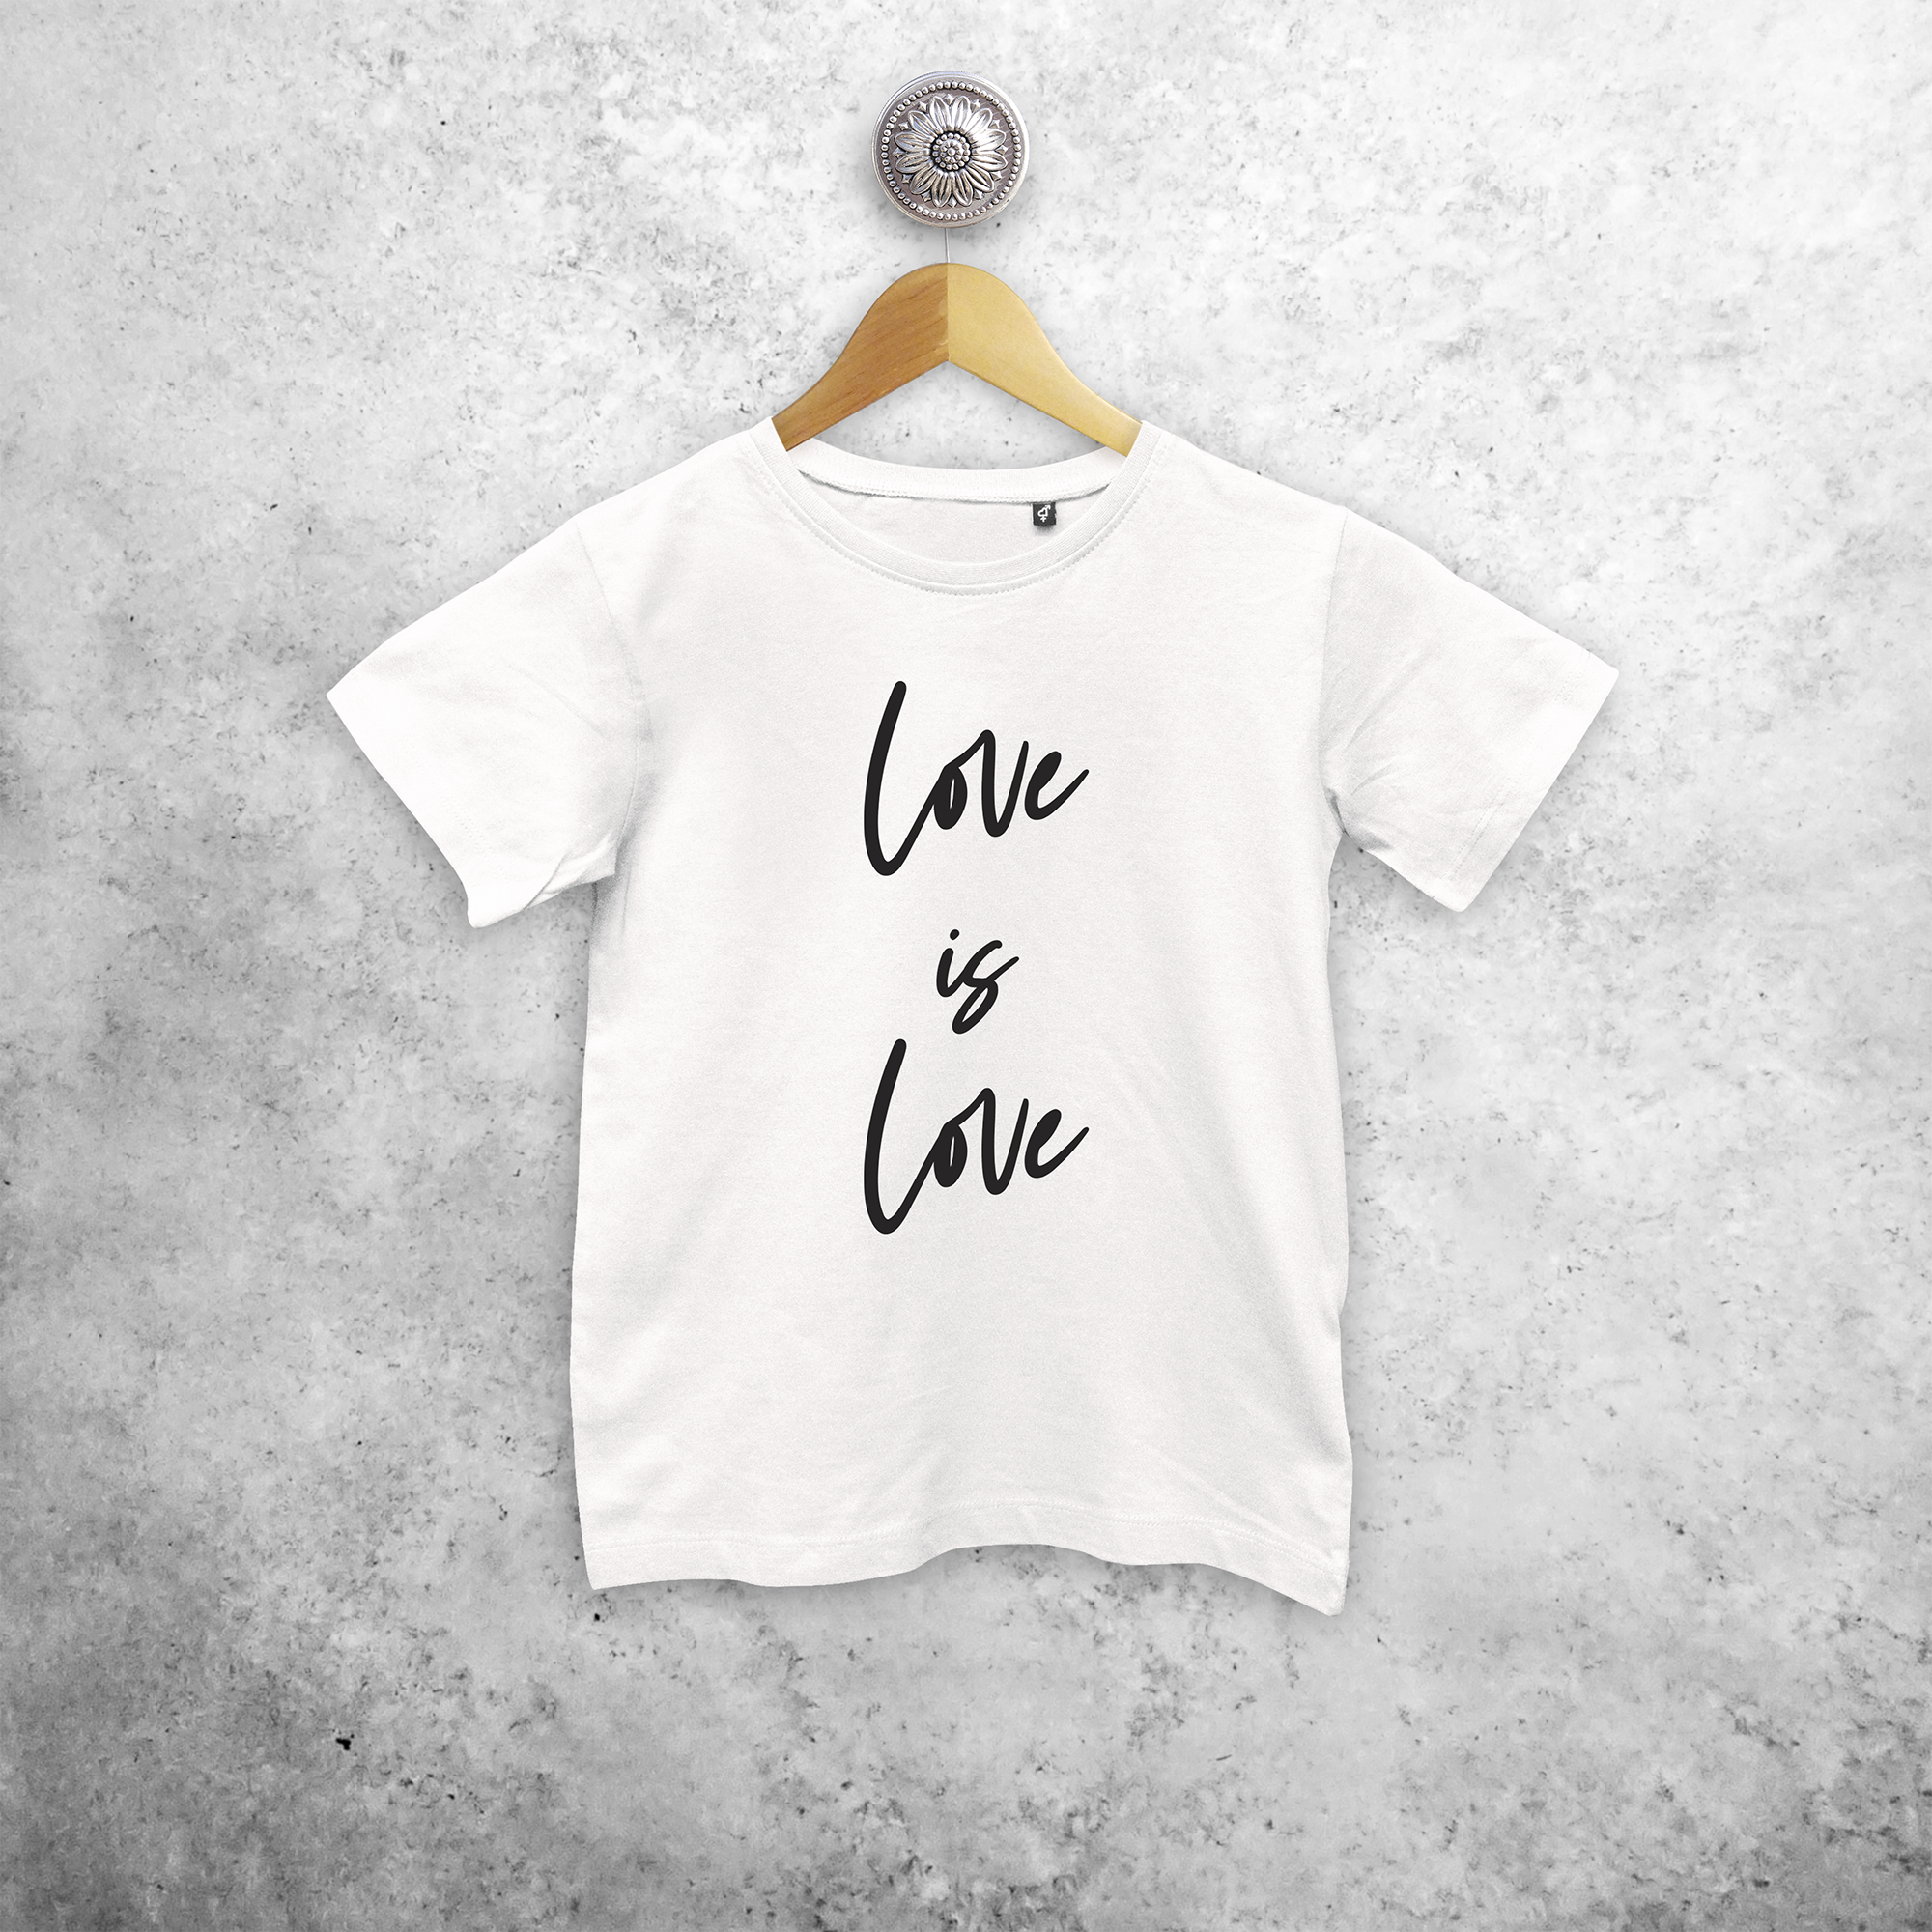 'Love is love' kids shortsleeve shirt